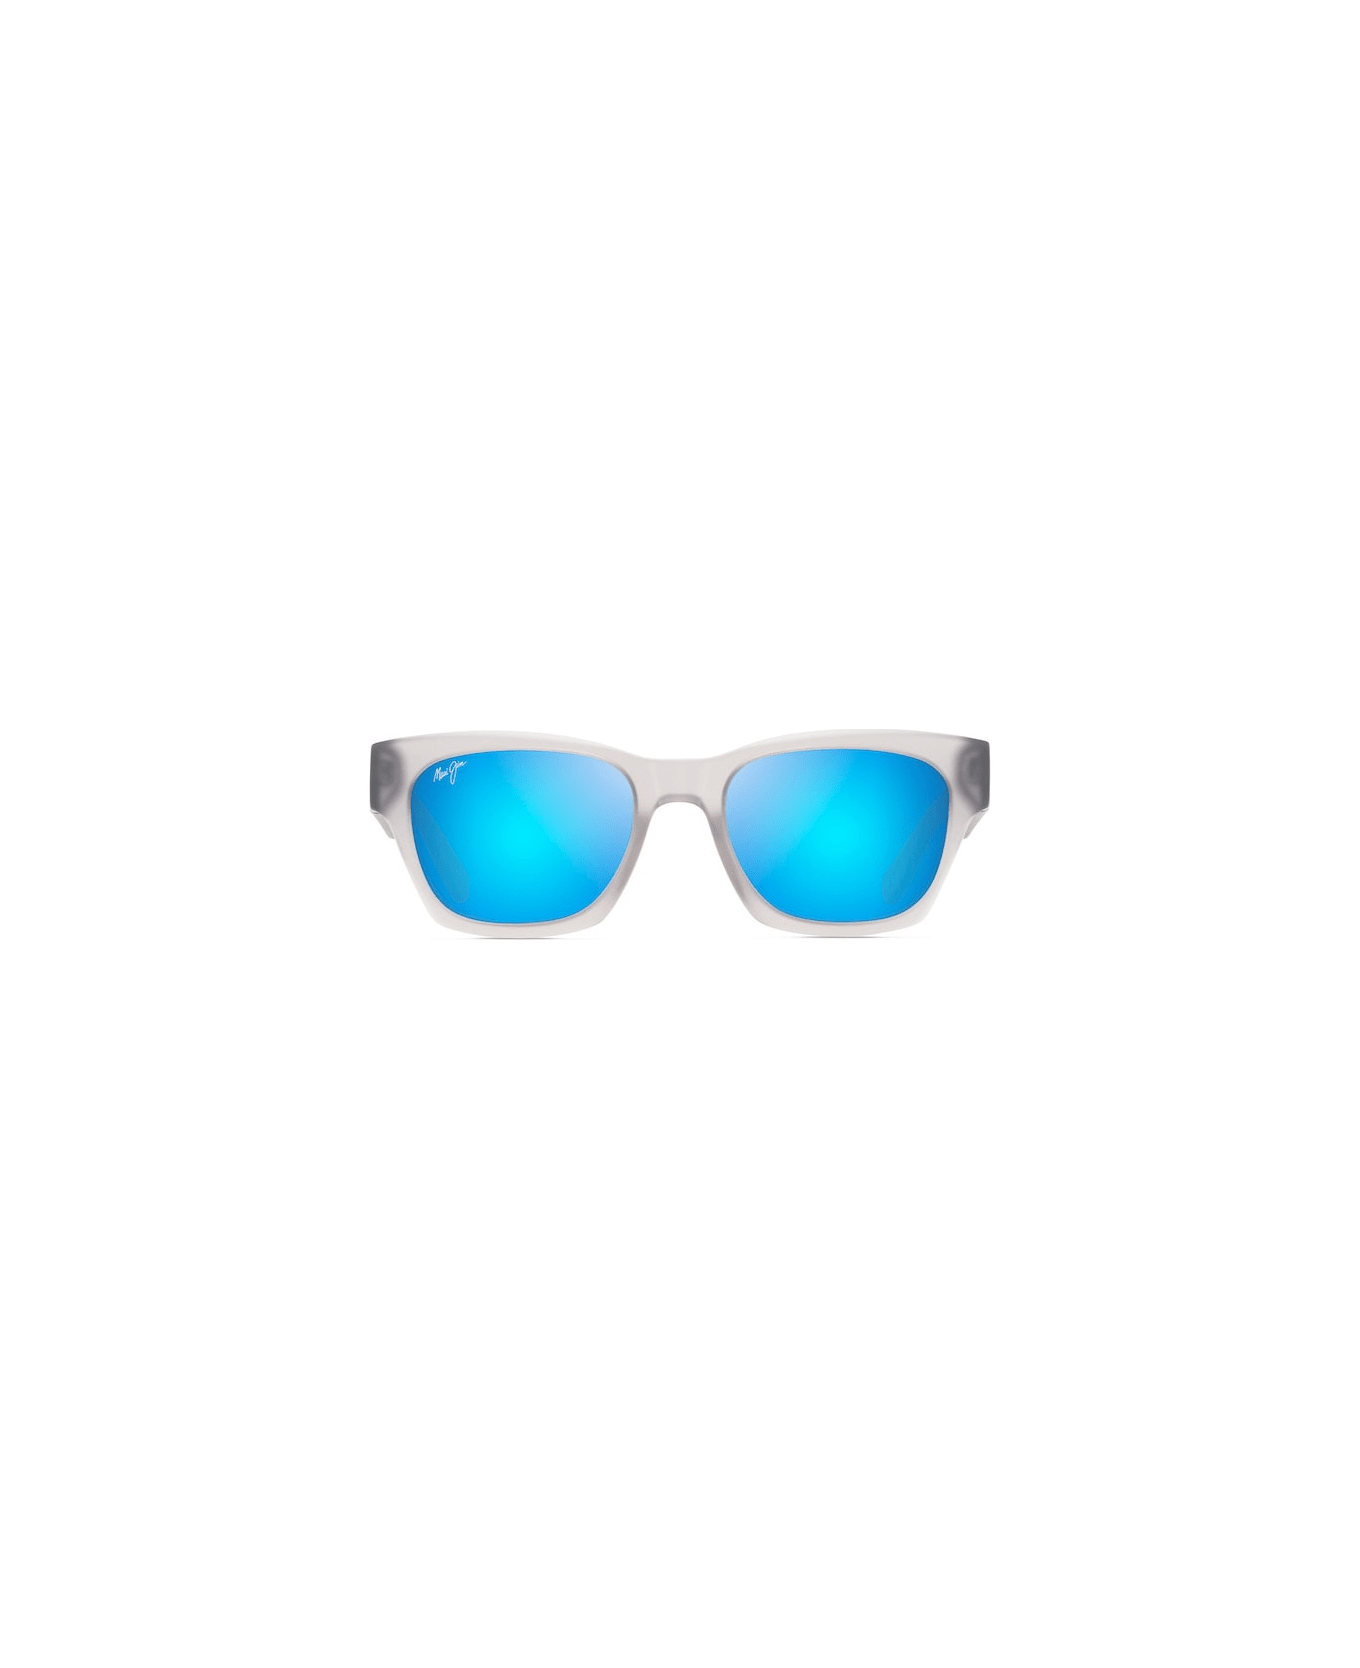 Maui Jim Valley Isle STG Sunglasses サングラス